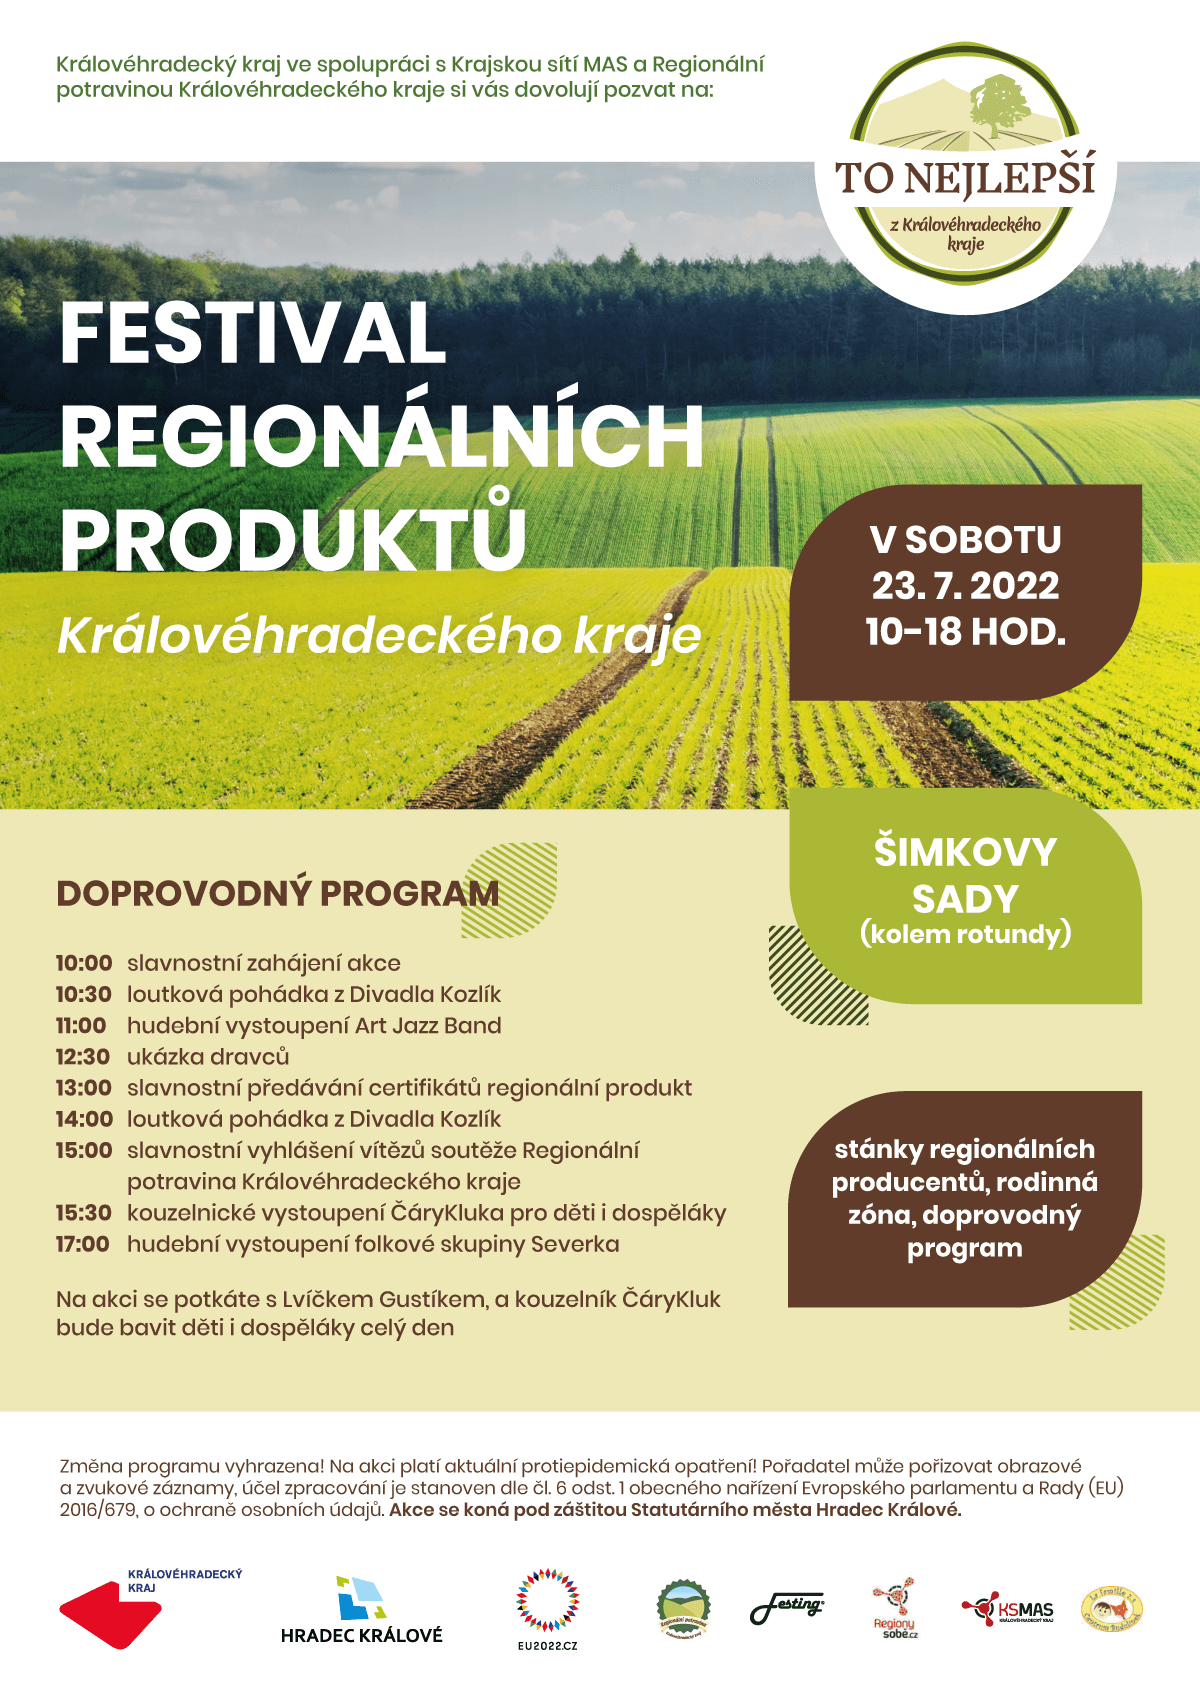 Královéhradecký kraj ve spolupráci s hospodářskou komorou pořádá Festival regionálních produktů 